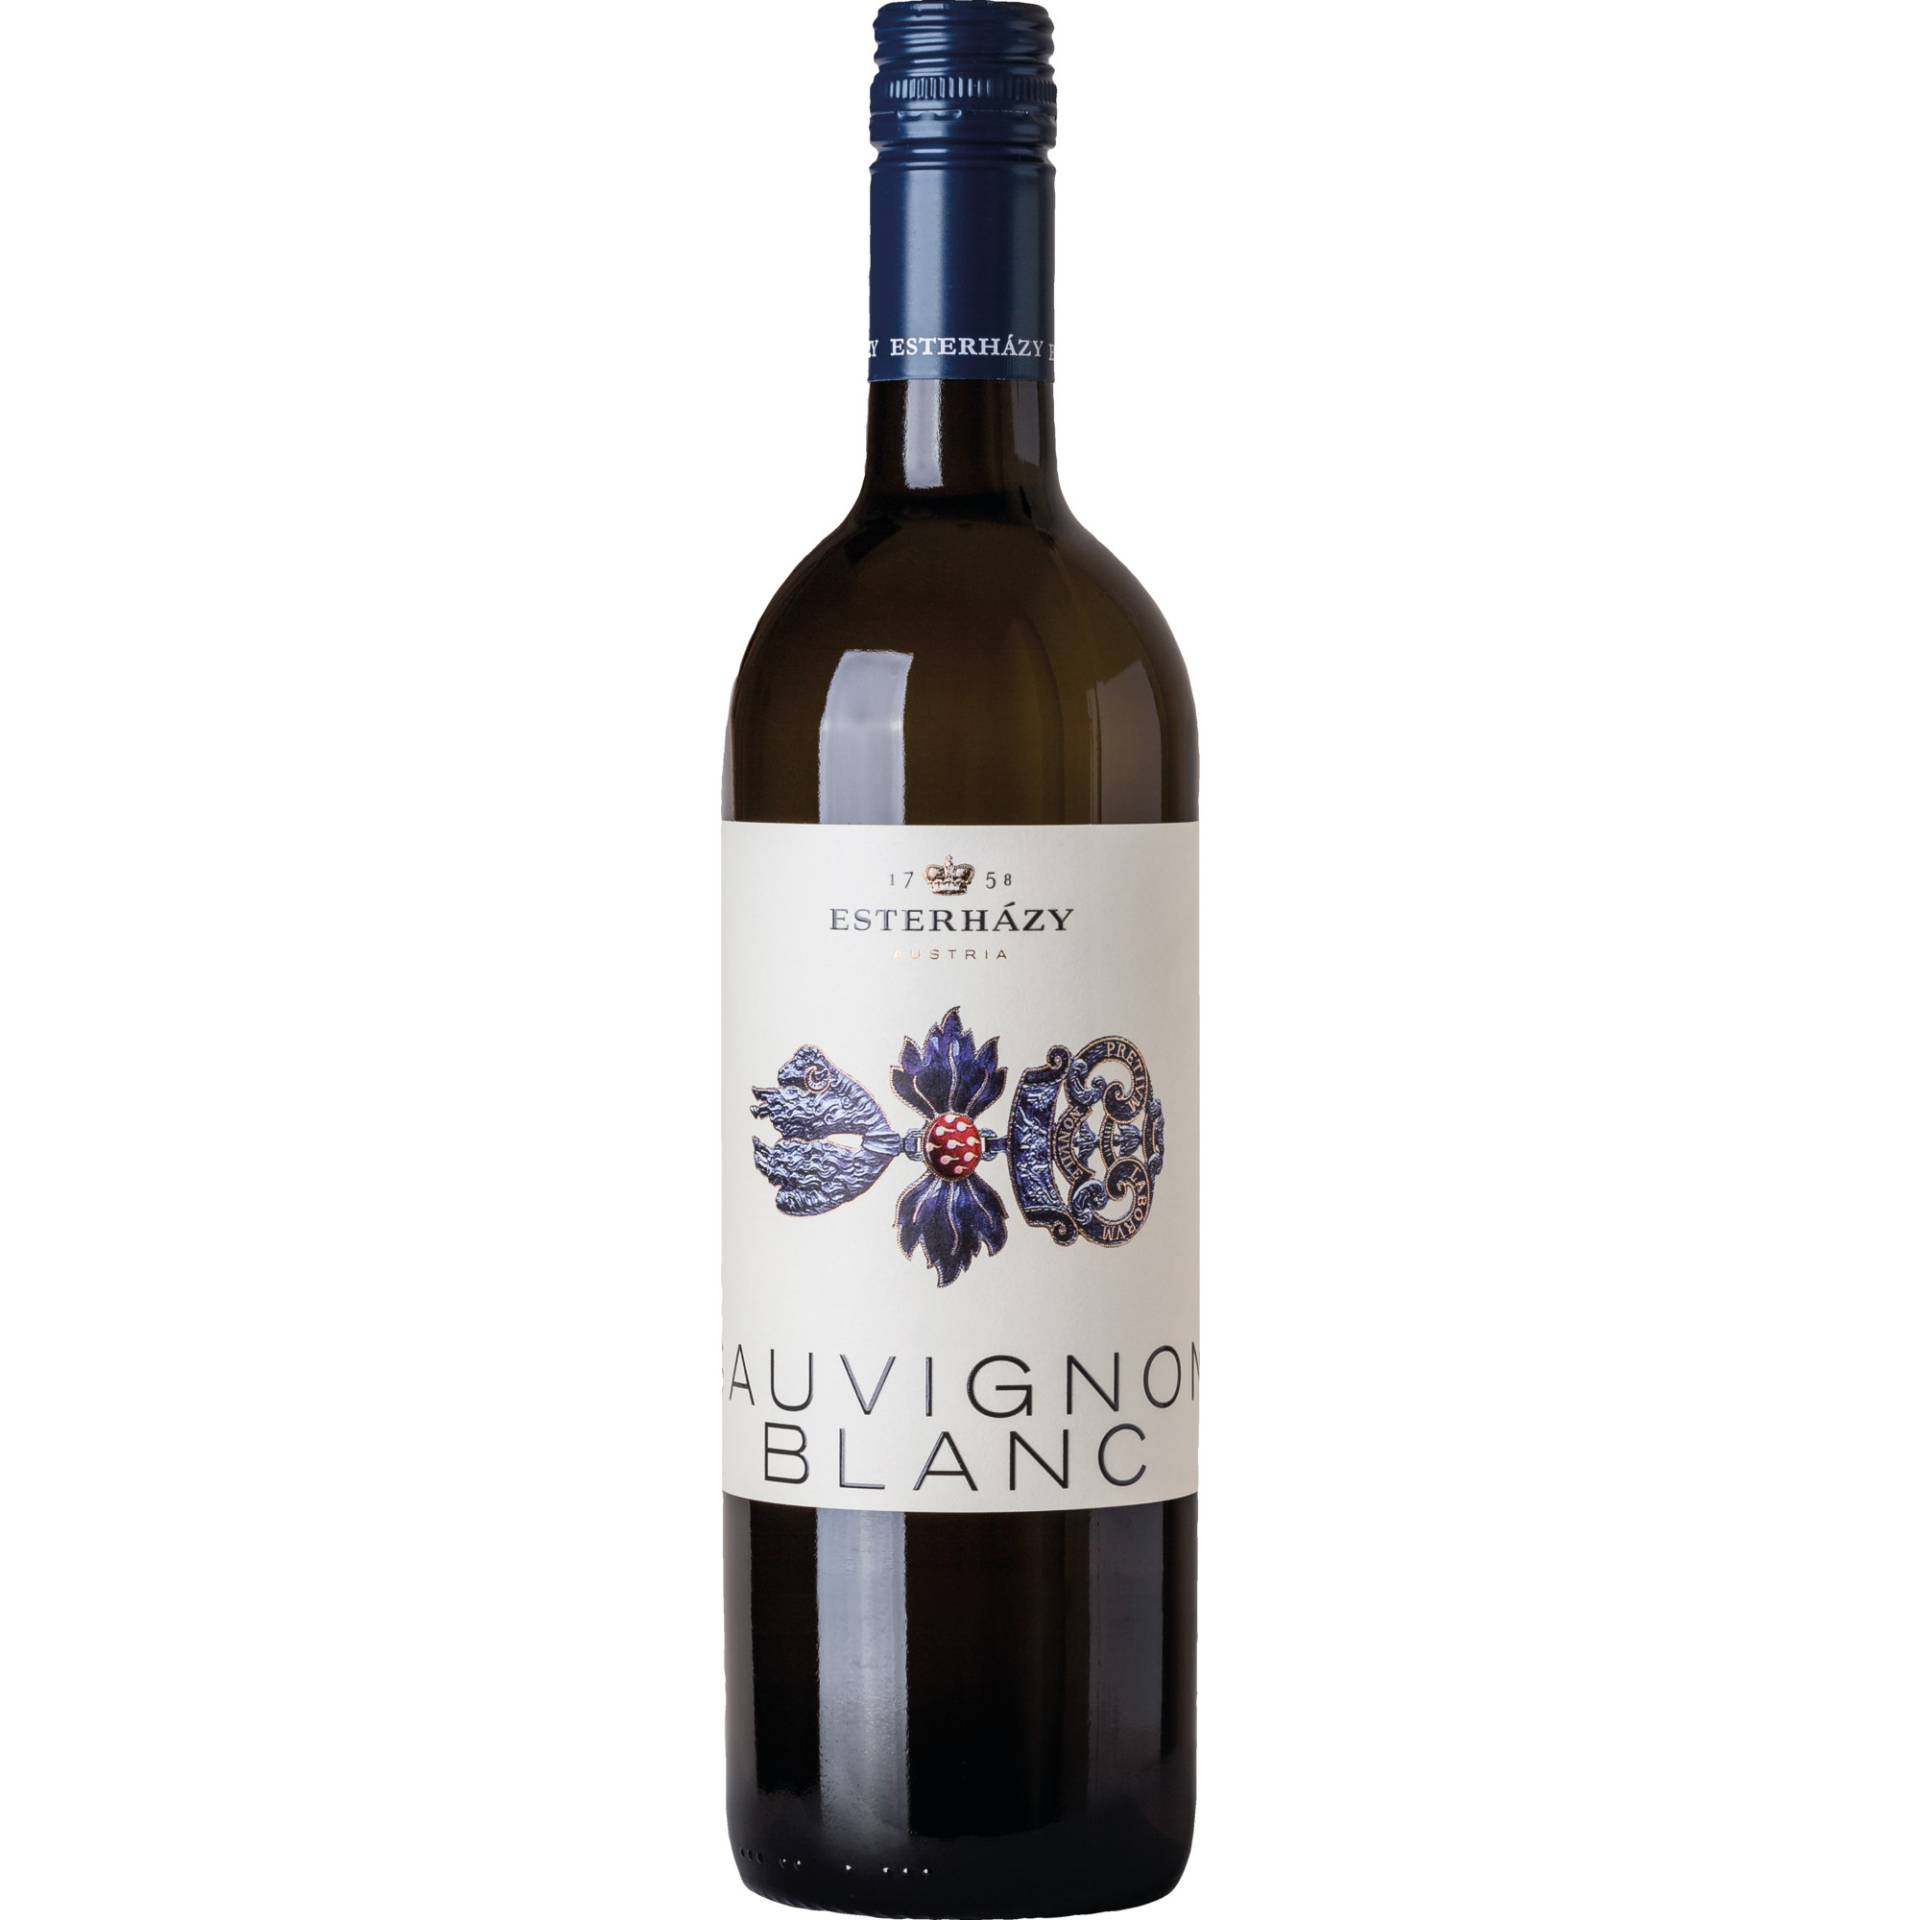 Estoras Sauvignon Blanc, Trocken, Burgenland, Burgenland, 2019, Weißwein von Esterházy Wein GmbH, A-7061 Trausdorf a. d. W., Österreich